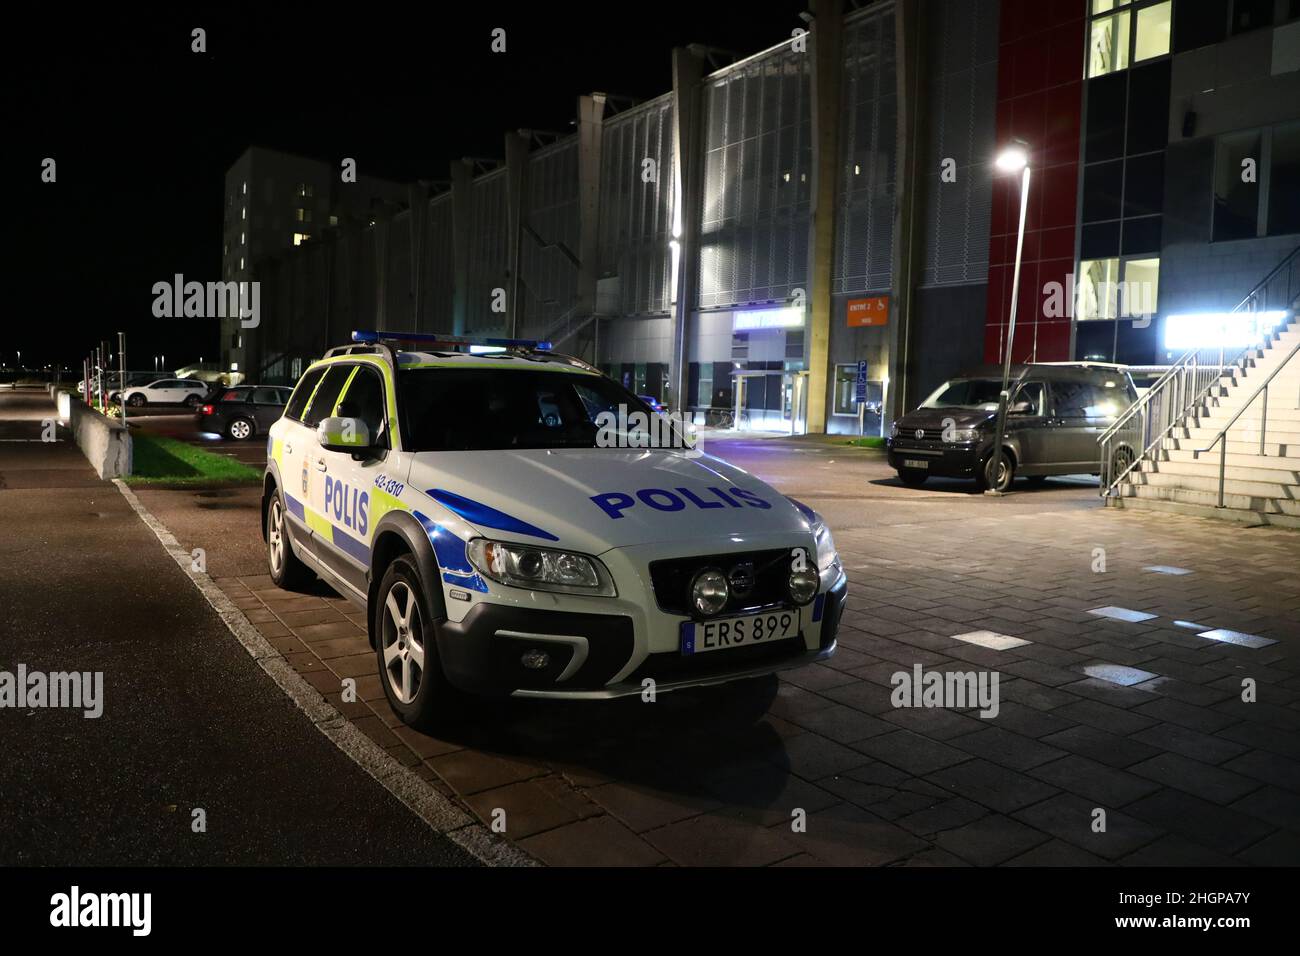 C'est à 6 heures mercredi que la police a reçu une alarme au sujet d'une fusillade dans l'arène de Linköping à Stångebro, en Suède.Un garçon de 17 ans avait été abattu dans la tête et emmené à l'hôpital universitaire pour traitement.Selon la police, la fusillade avait eu lieu à l'intérieur. Banque D'Images